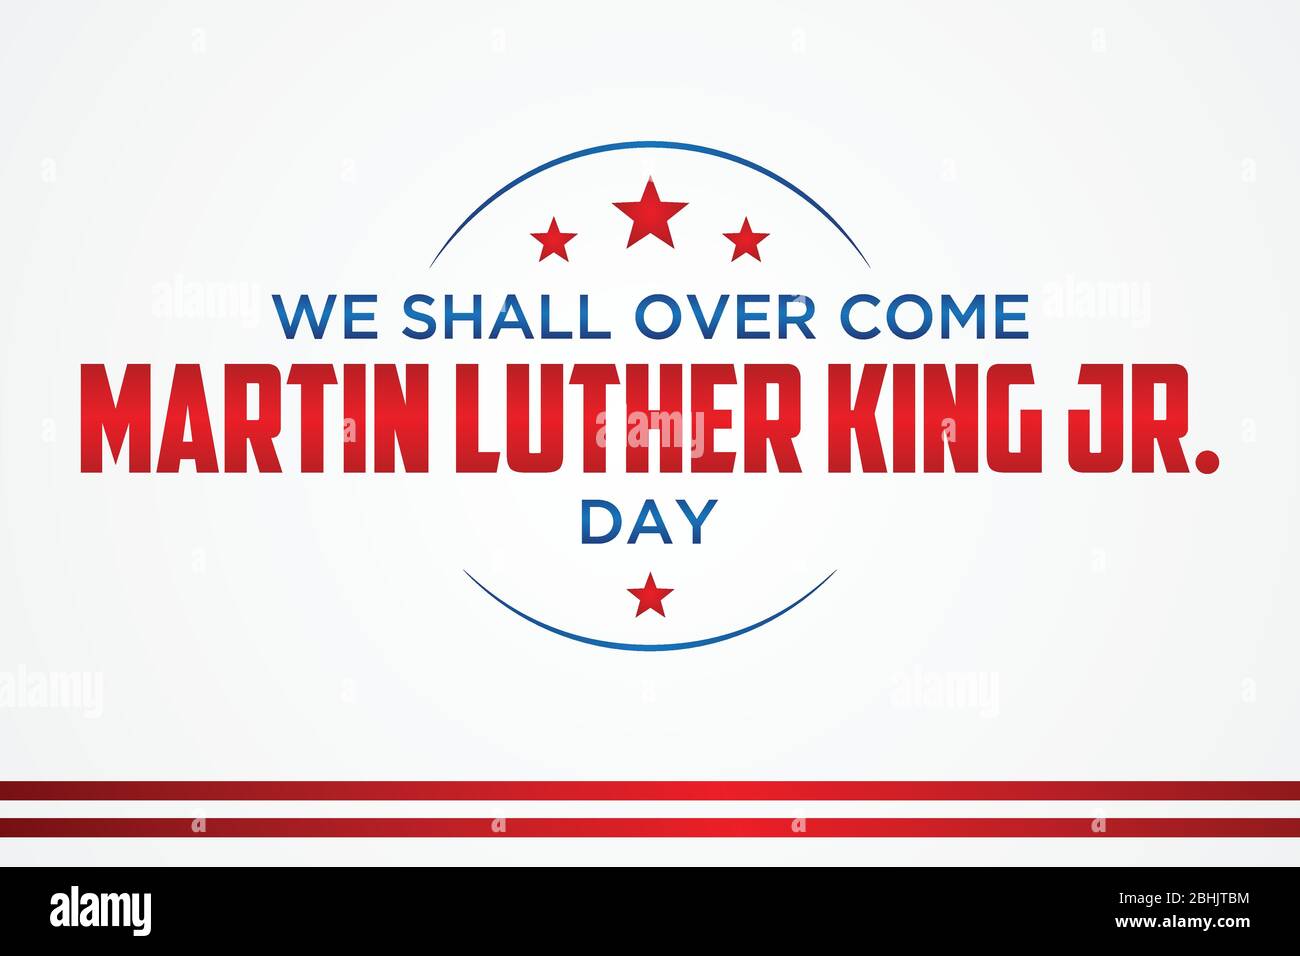 Semplice emblema di lettera Martin Luther King Jr. Giorno o MLK JR. Giorno all'interno della linea esagonale. Elemento di design biglietto di auguri, banner, poster, sfondo e e Illustrazione Vettoriale